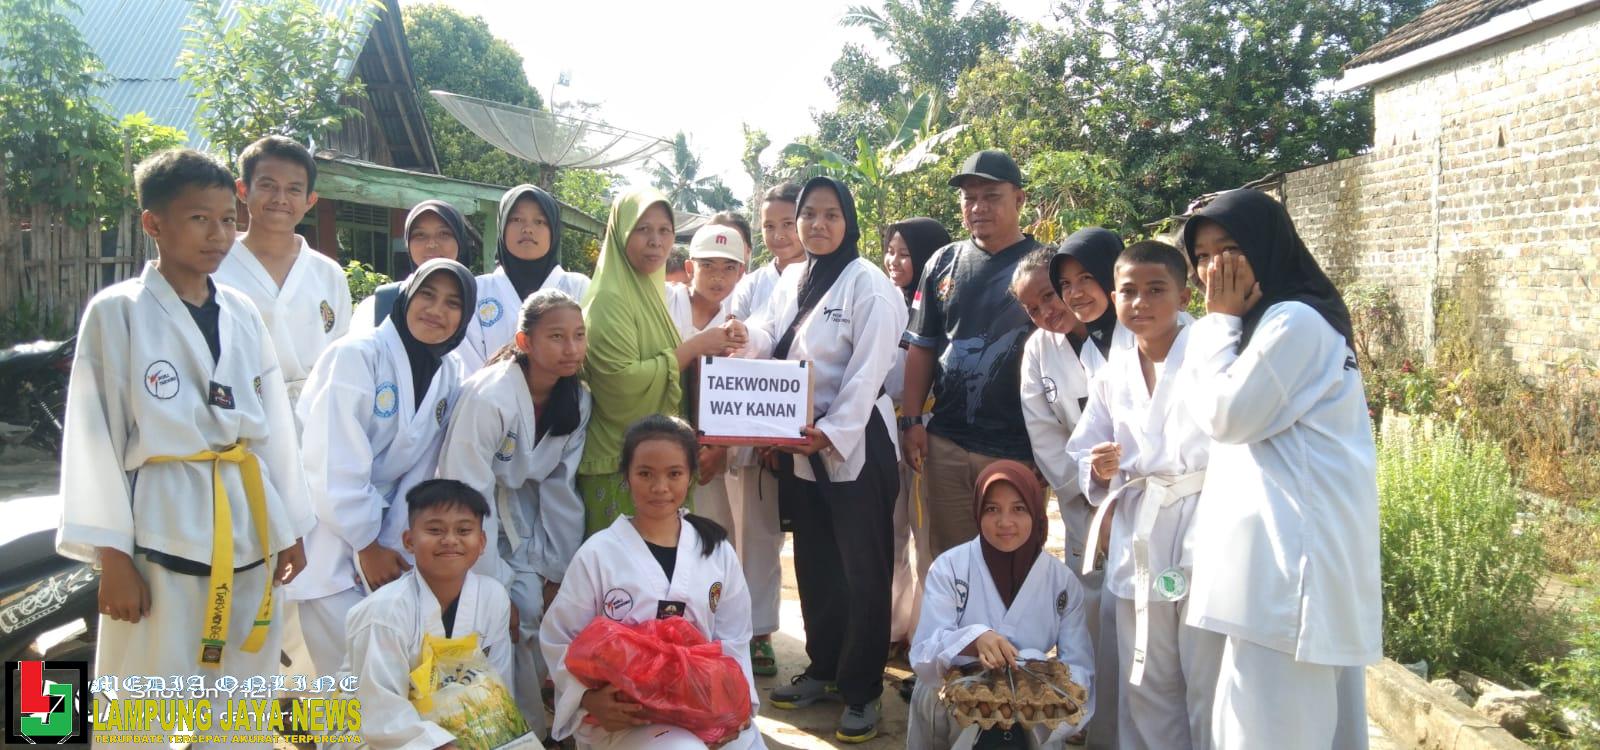 Peduli Bencana, Pengurua Taekwondo Kabupaten Way Kanan Salurkan Bantuan Bagi Para Korban Bencana Tanah Longsor